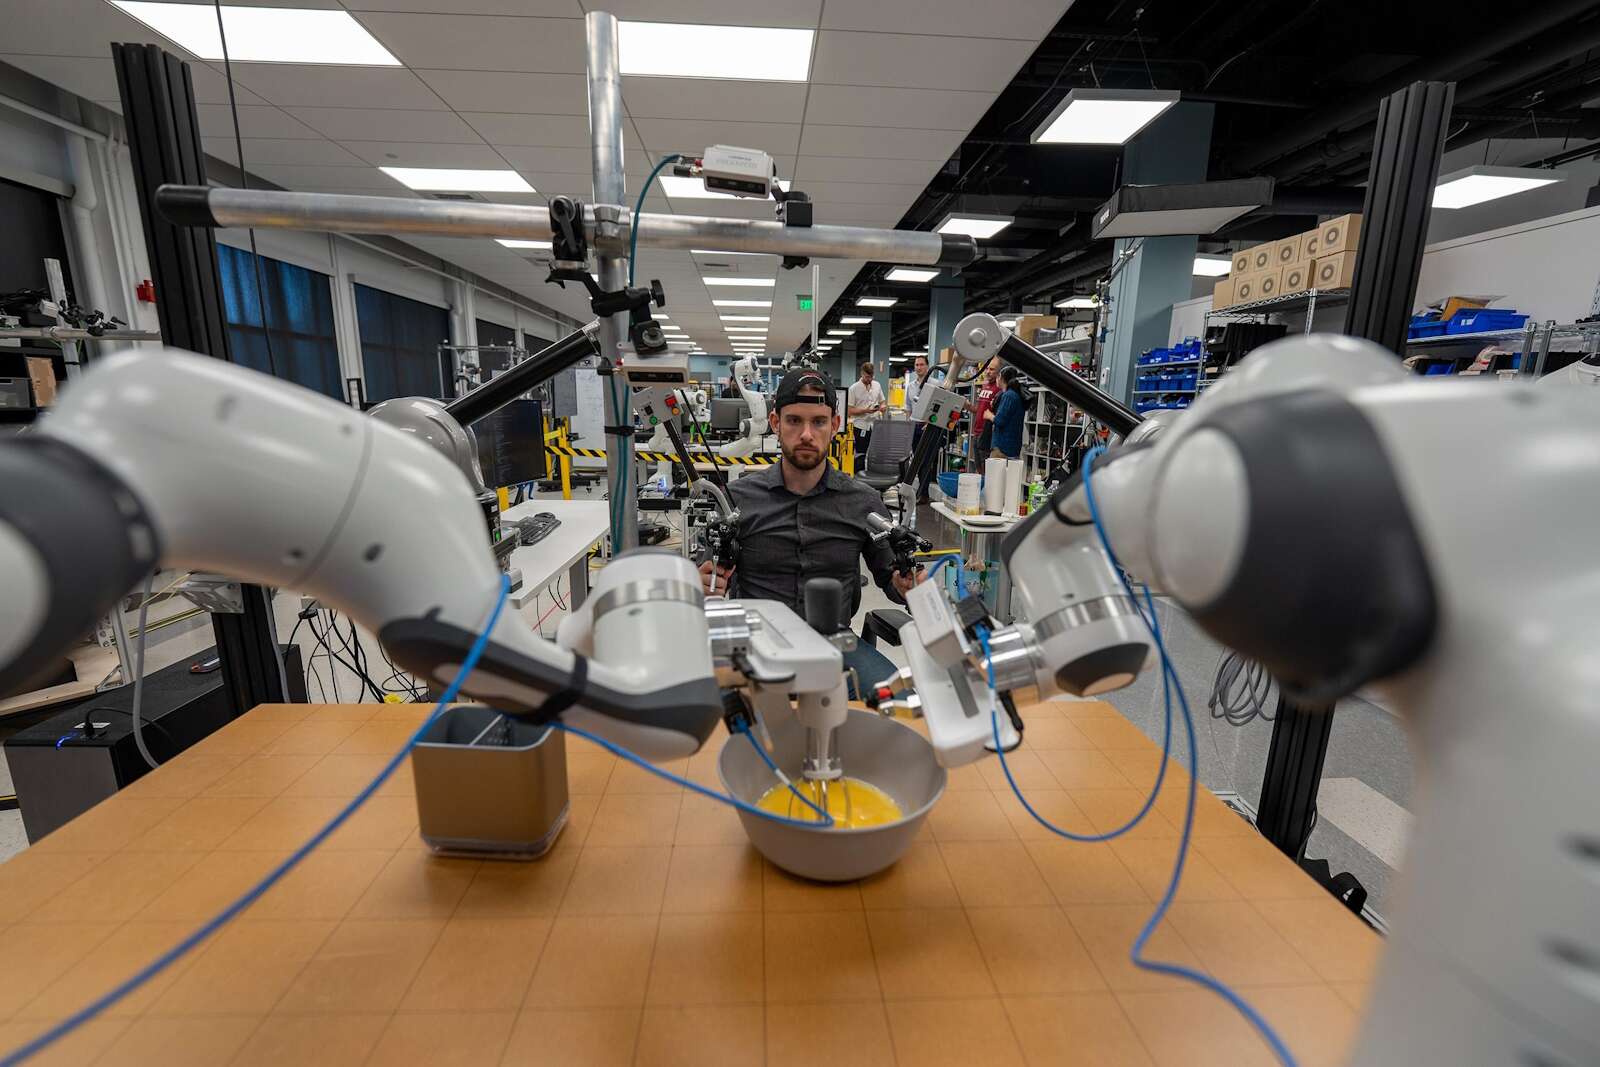 ¡El MIT y Toyota lanzan la revolución de la inteligencia artificial en robótica utilizando robots de rápido aprendizaje!